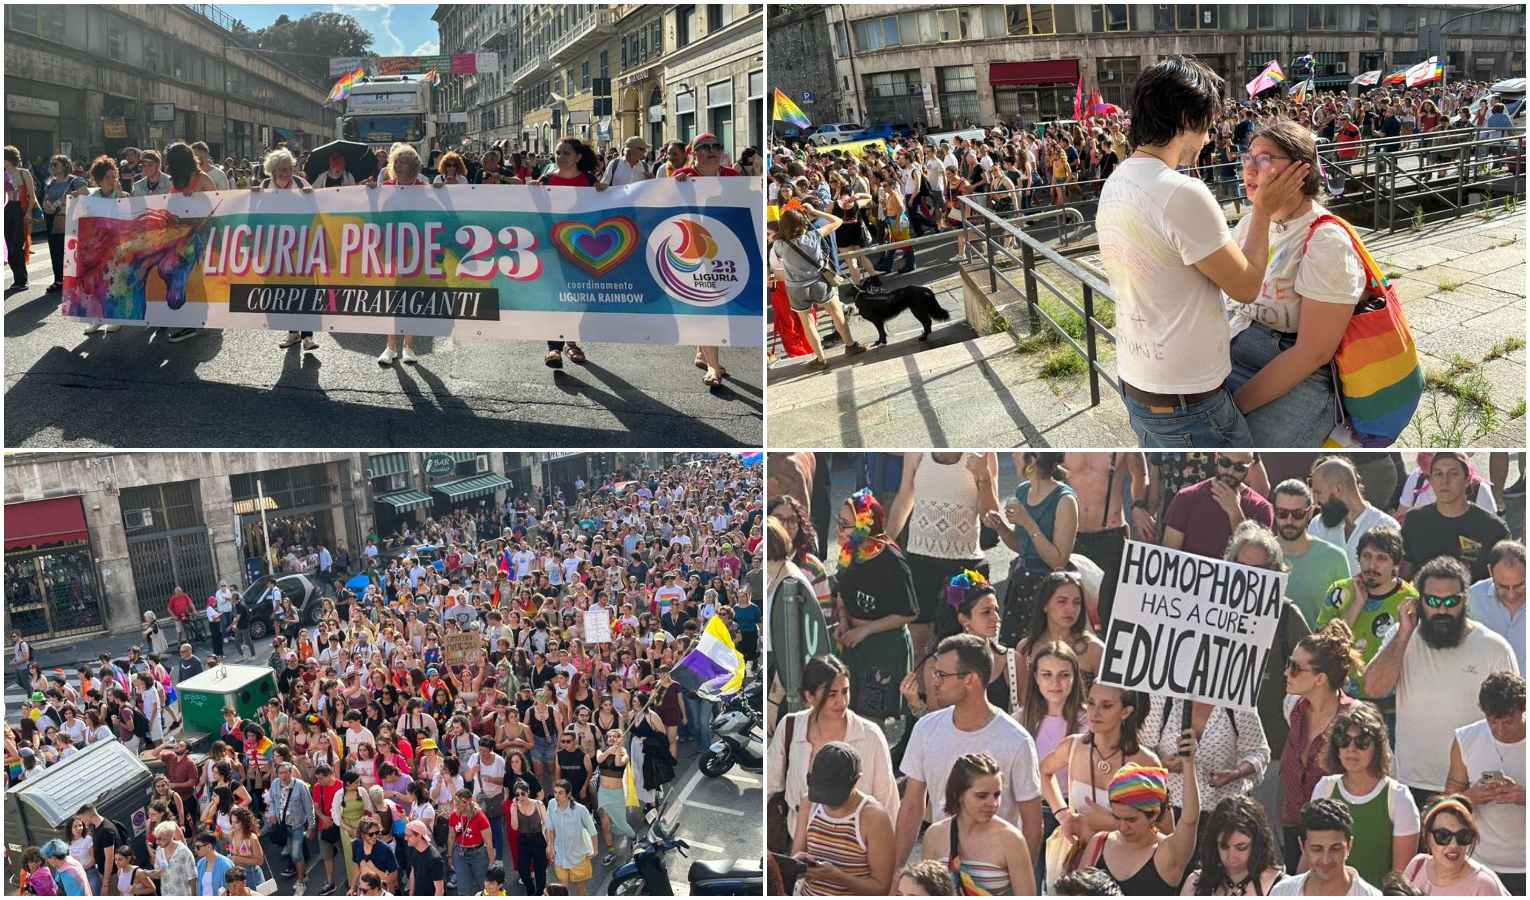 Musica, diritti e orgoglio colorano il Liguria Pride: 25 mila in corteo